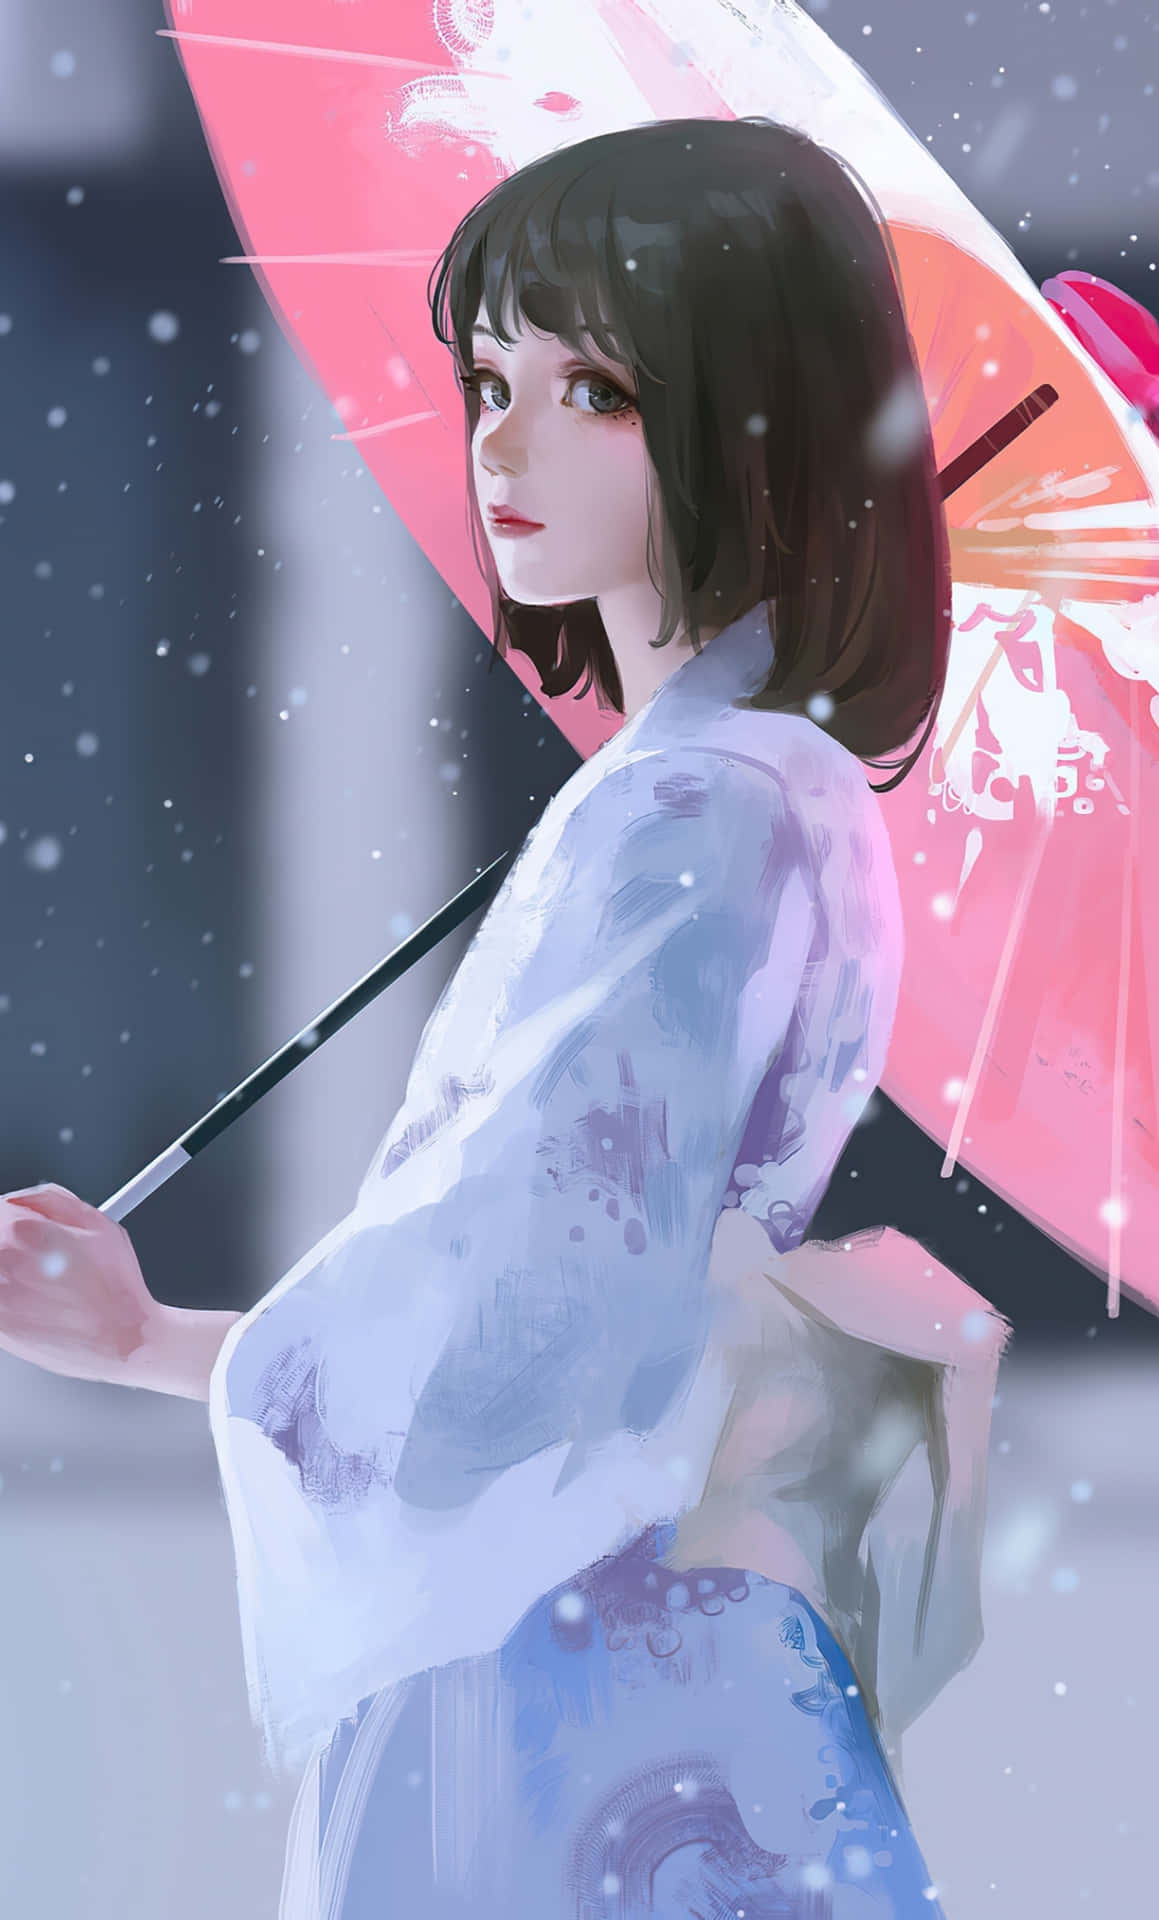 Imagende Una Adolescente De Anime Con Kimono.